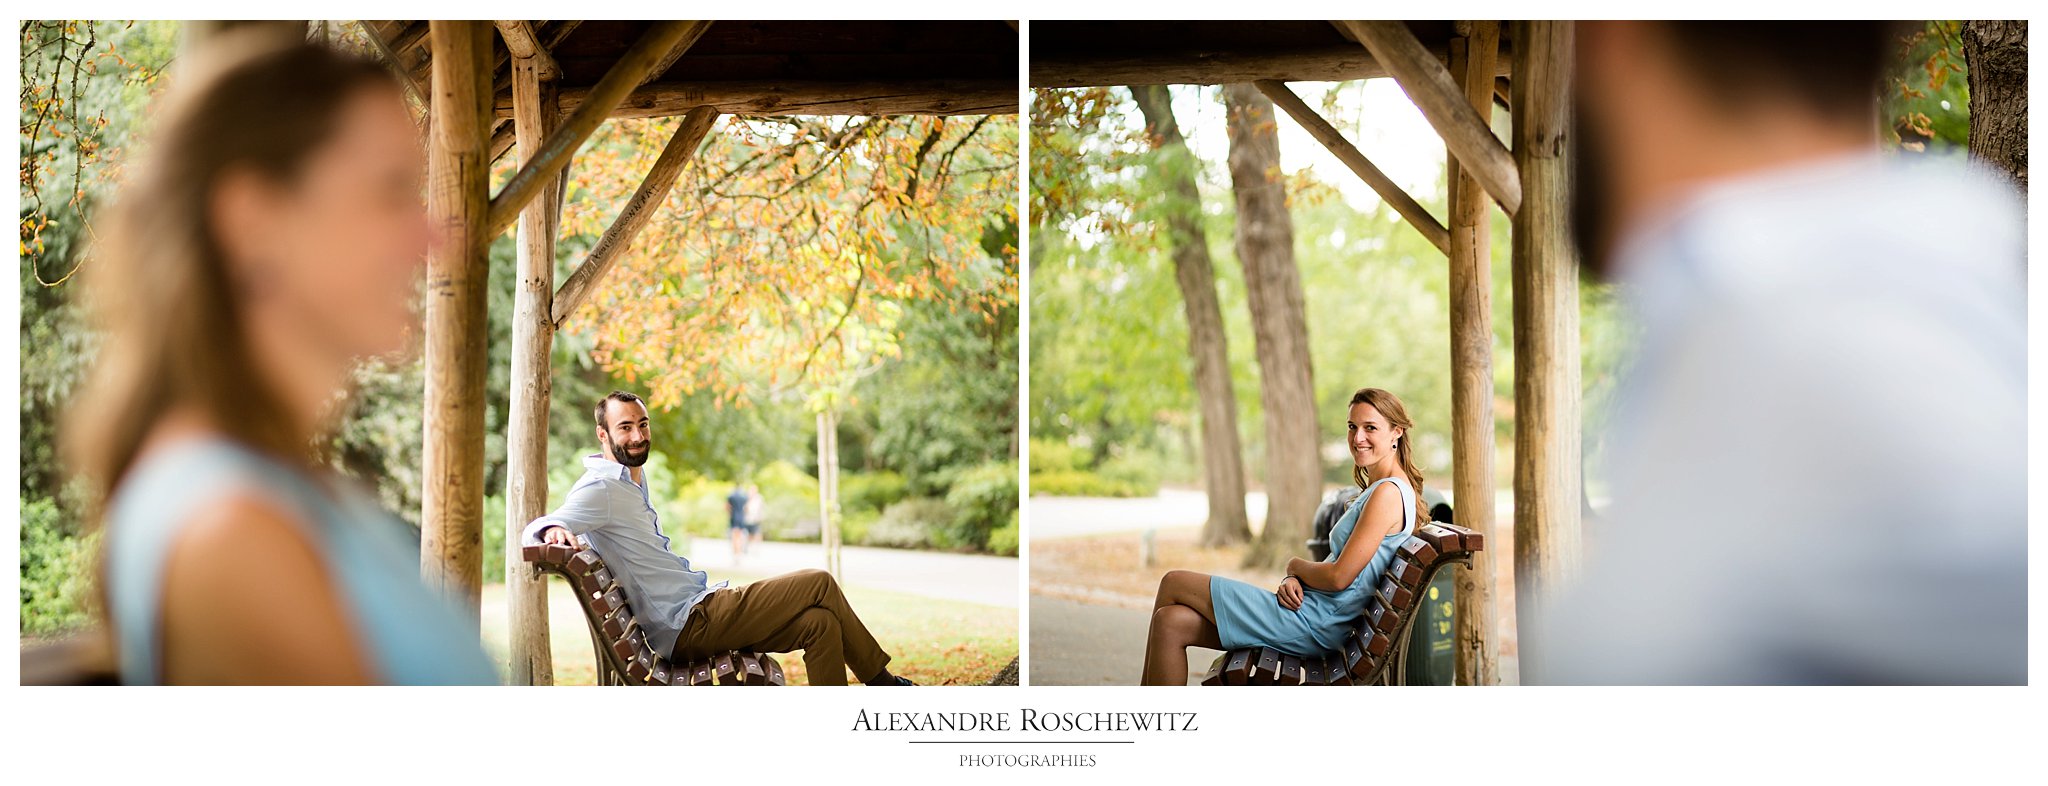 La séance engagement et famille de Nathalie et Nicolas au Parc Bordelais. Alexandre Roschewitz Photographies.